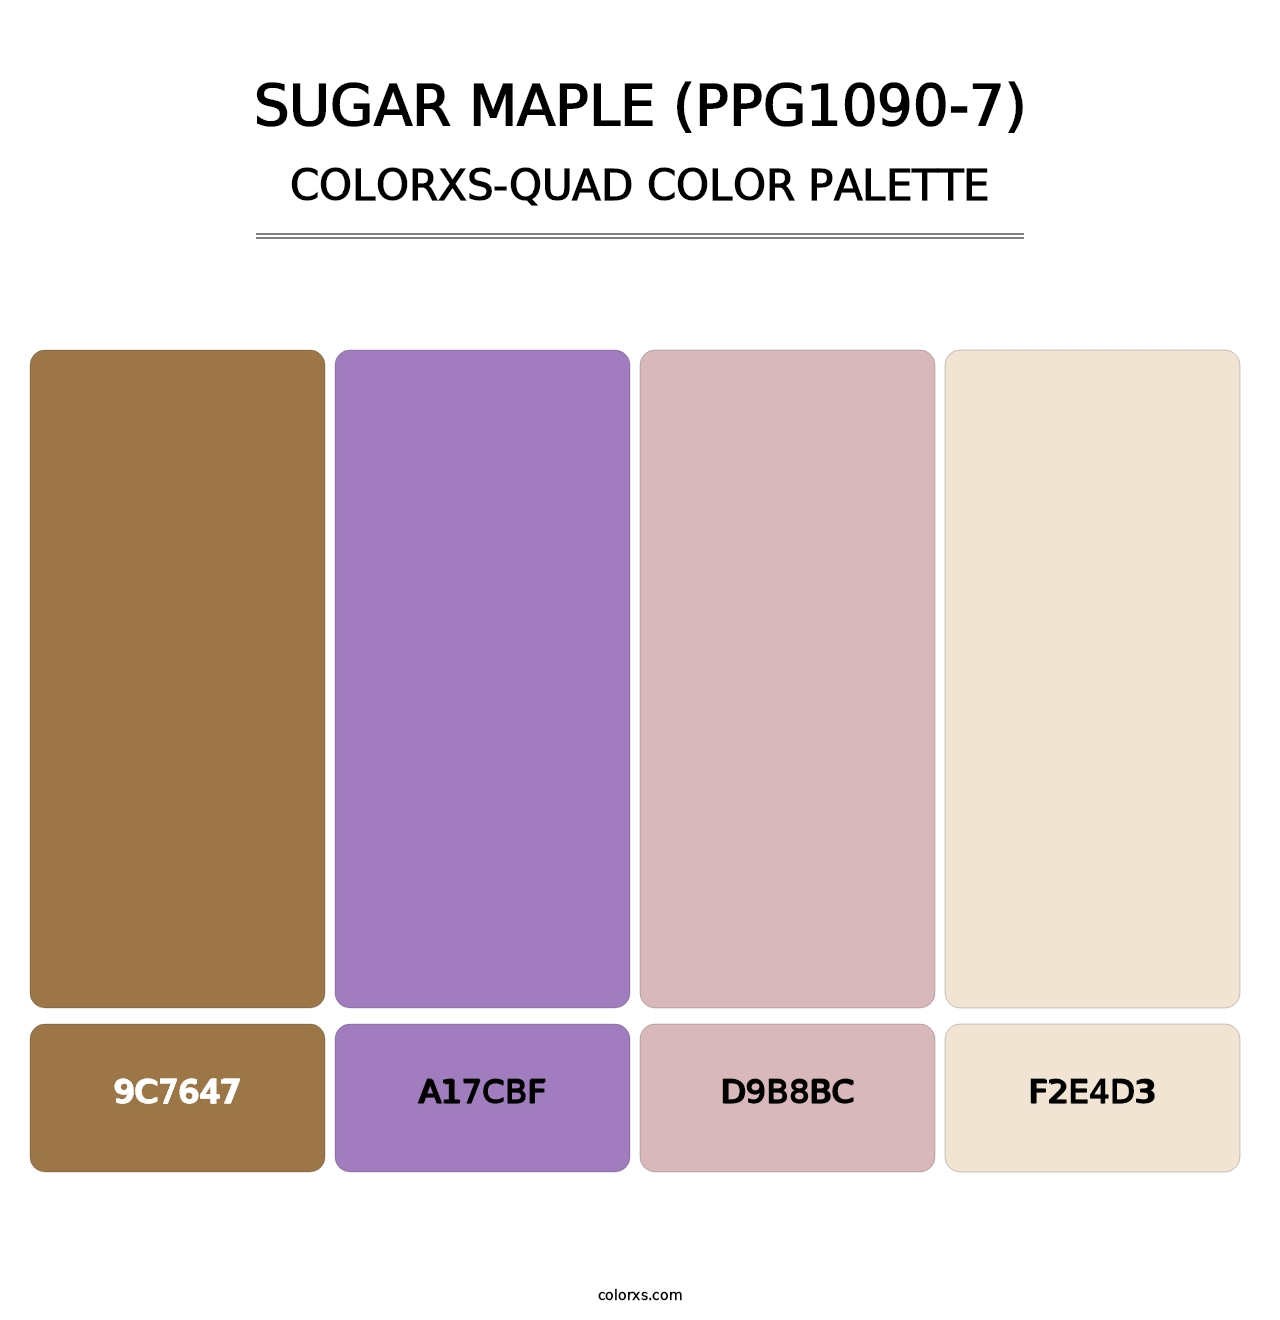 Sugar Maple (PPG1090-7) - Colorxs Quad Palette